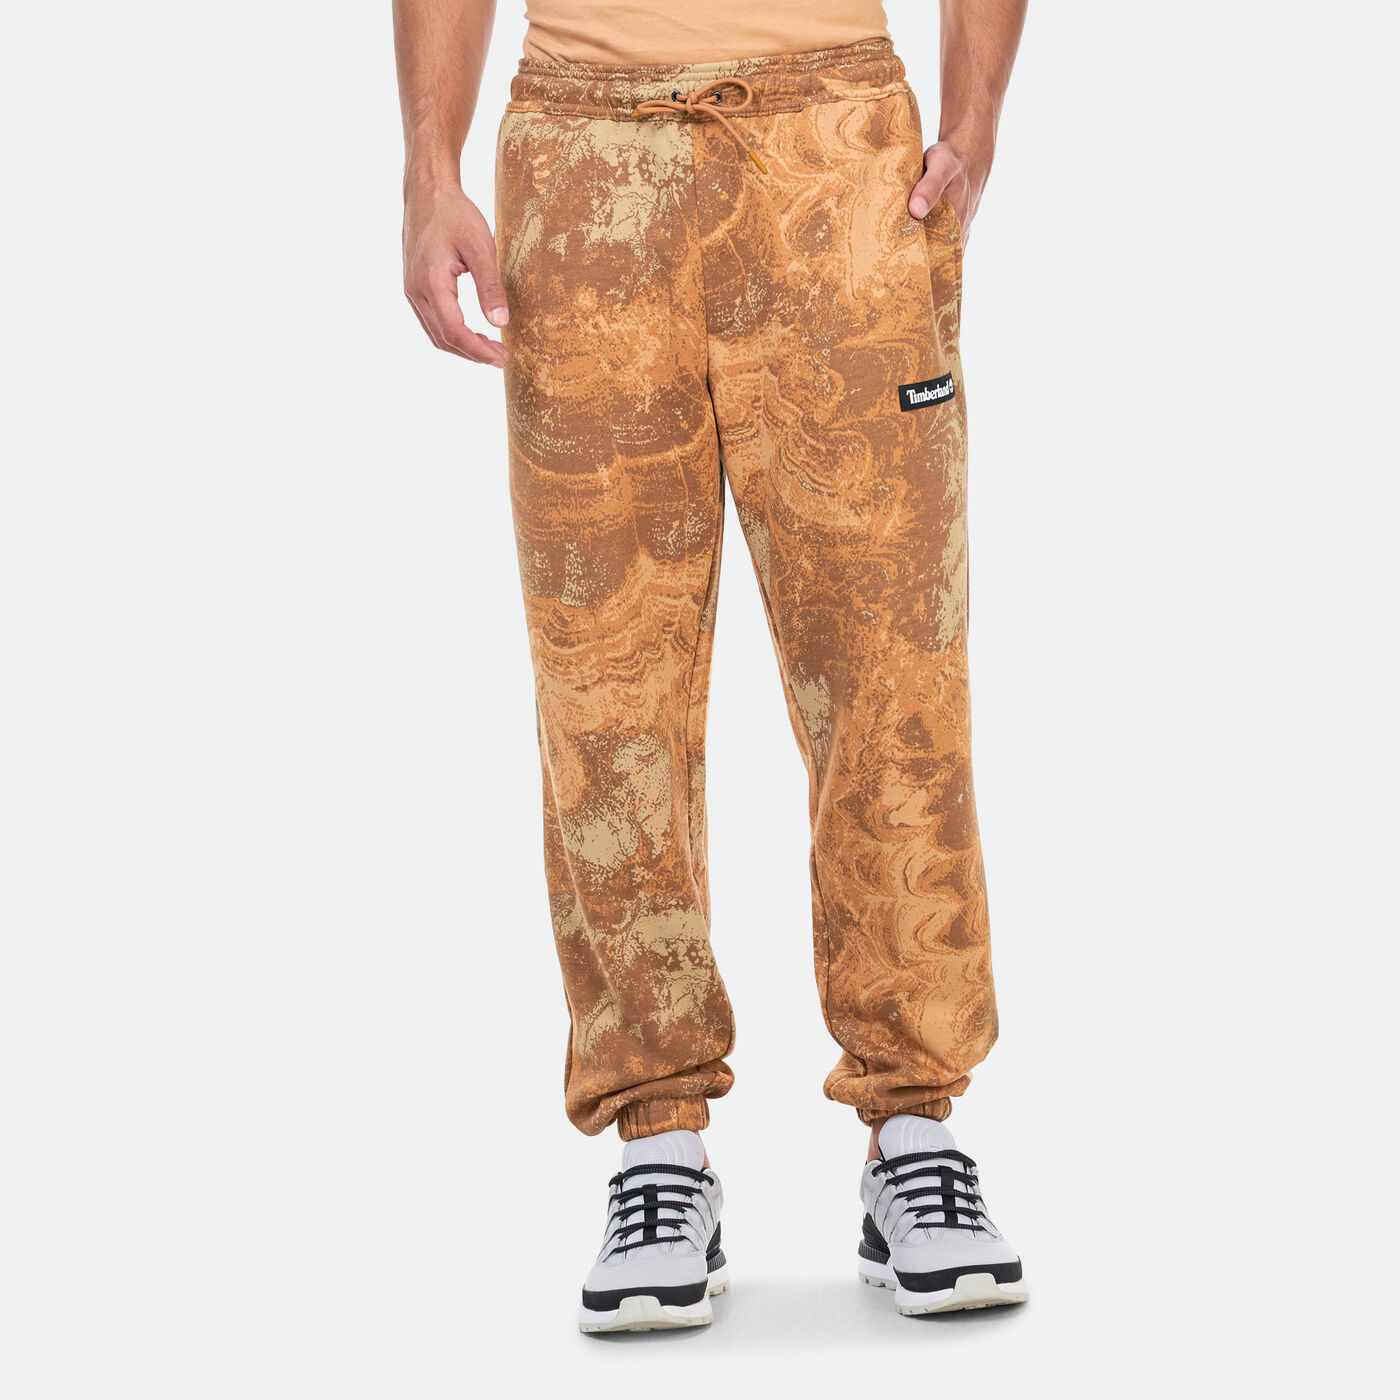 Men's Printed Sweatpants